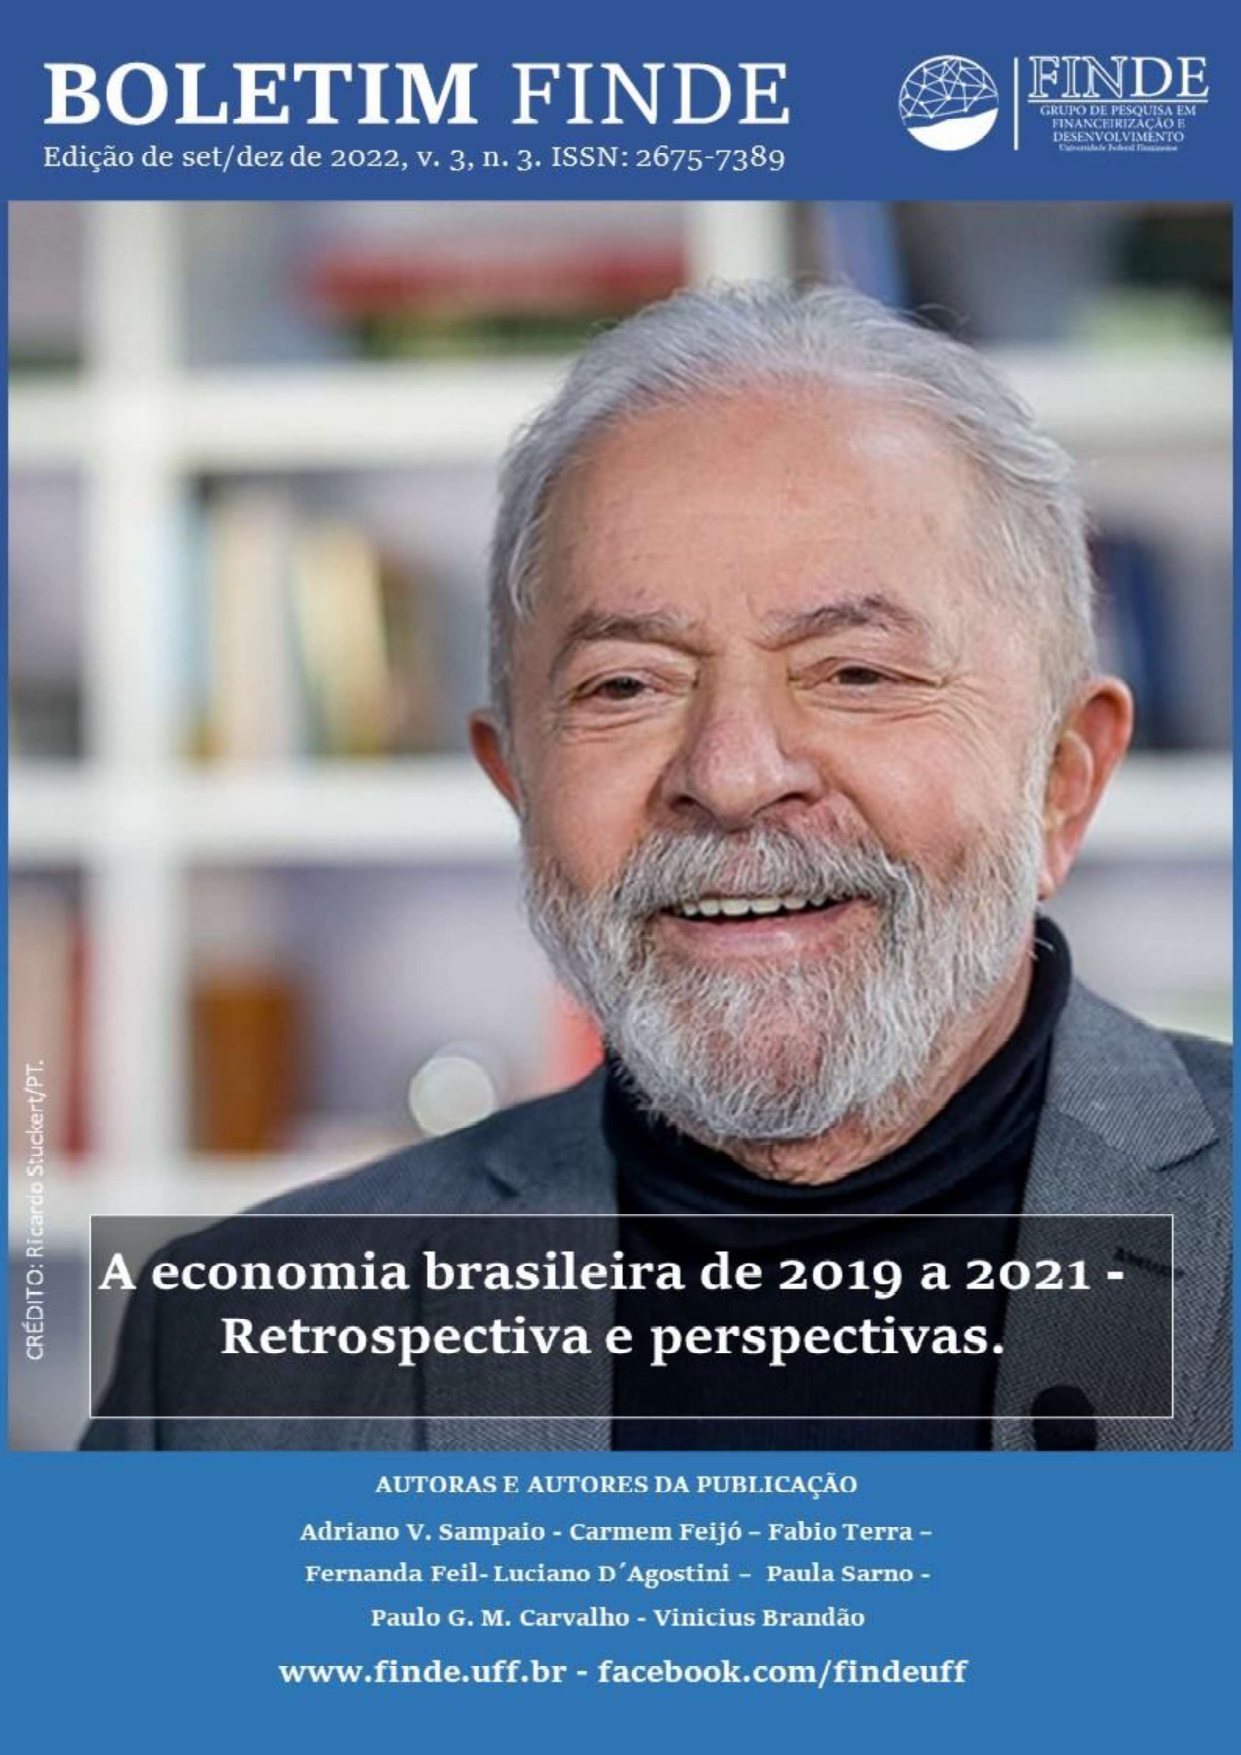 Boletim nº 09 - A economia brasileira de 2019 a 2021 - Retrospectiva e perspectivas